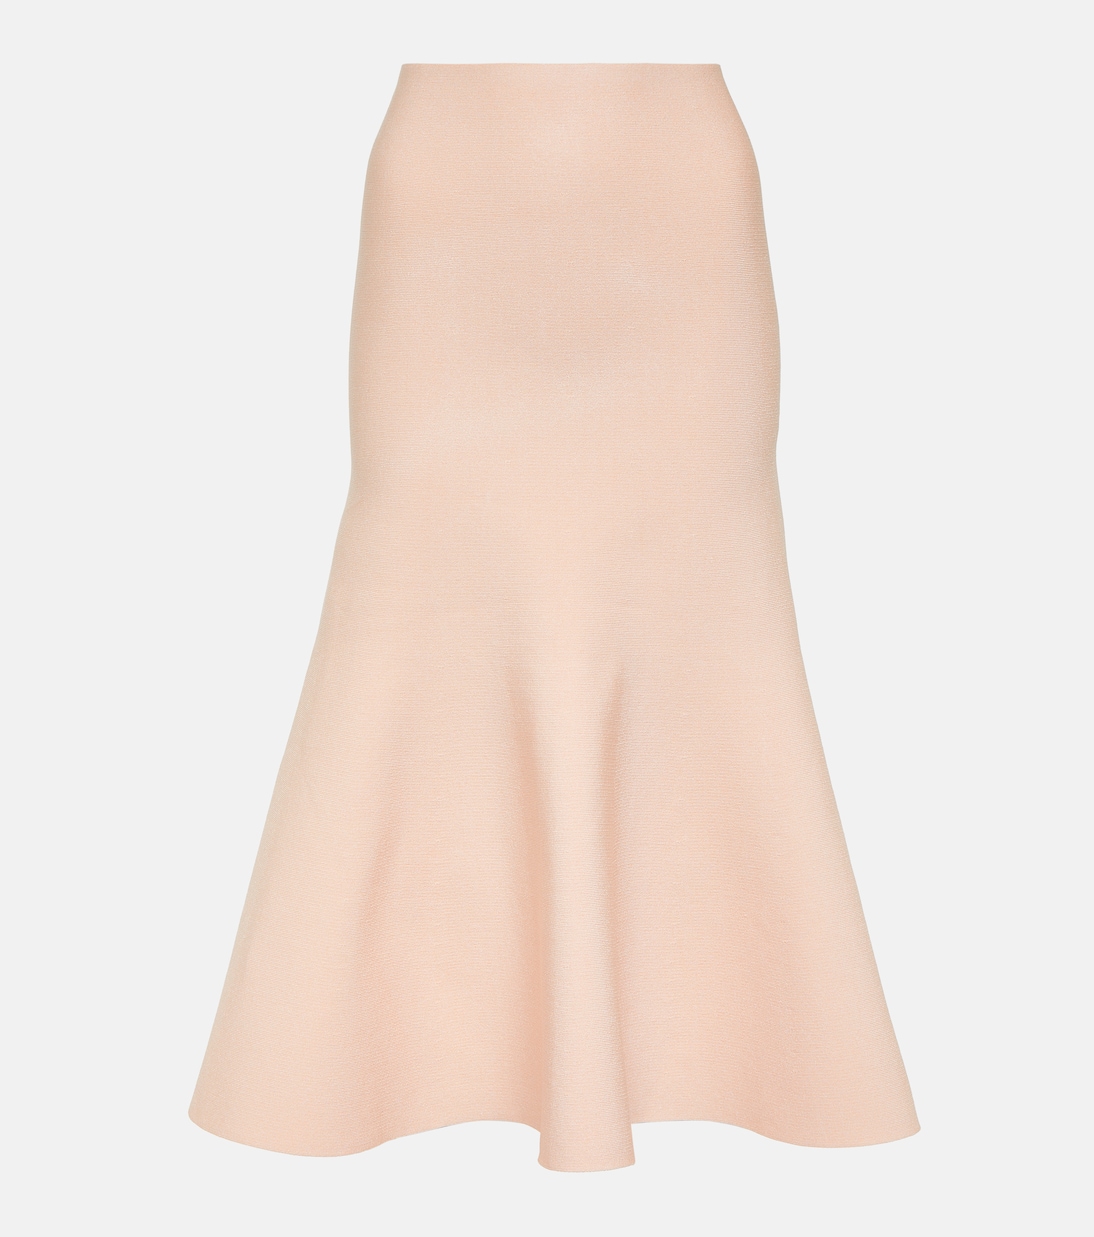 Расклешенная юбка миди с высокой посадкой Victoria Beckham, розовый юбка расклешенная с высокой посадкой в полоску ayzolle s бежевый